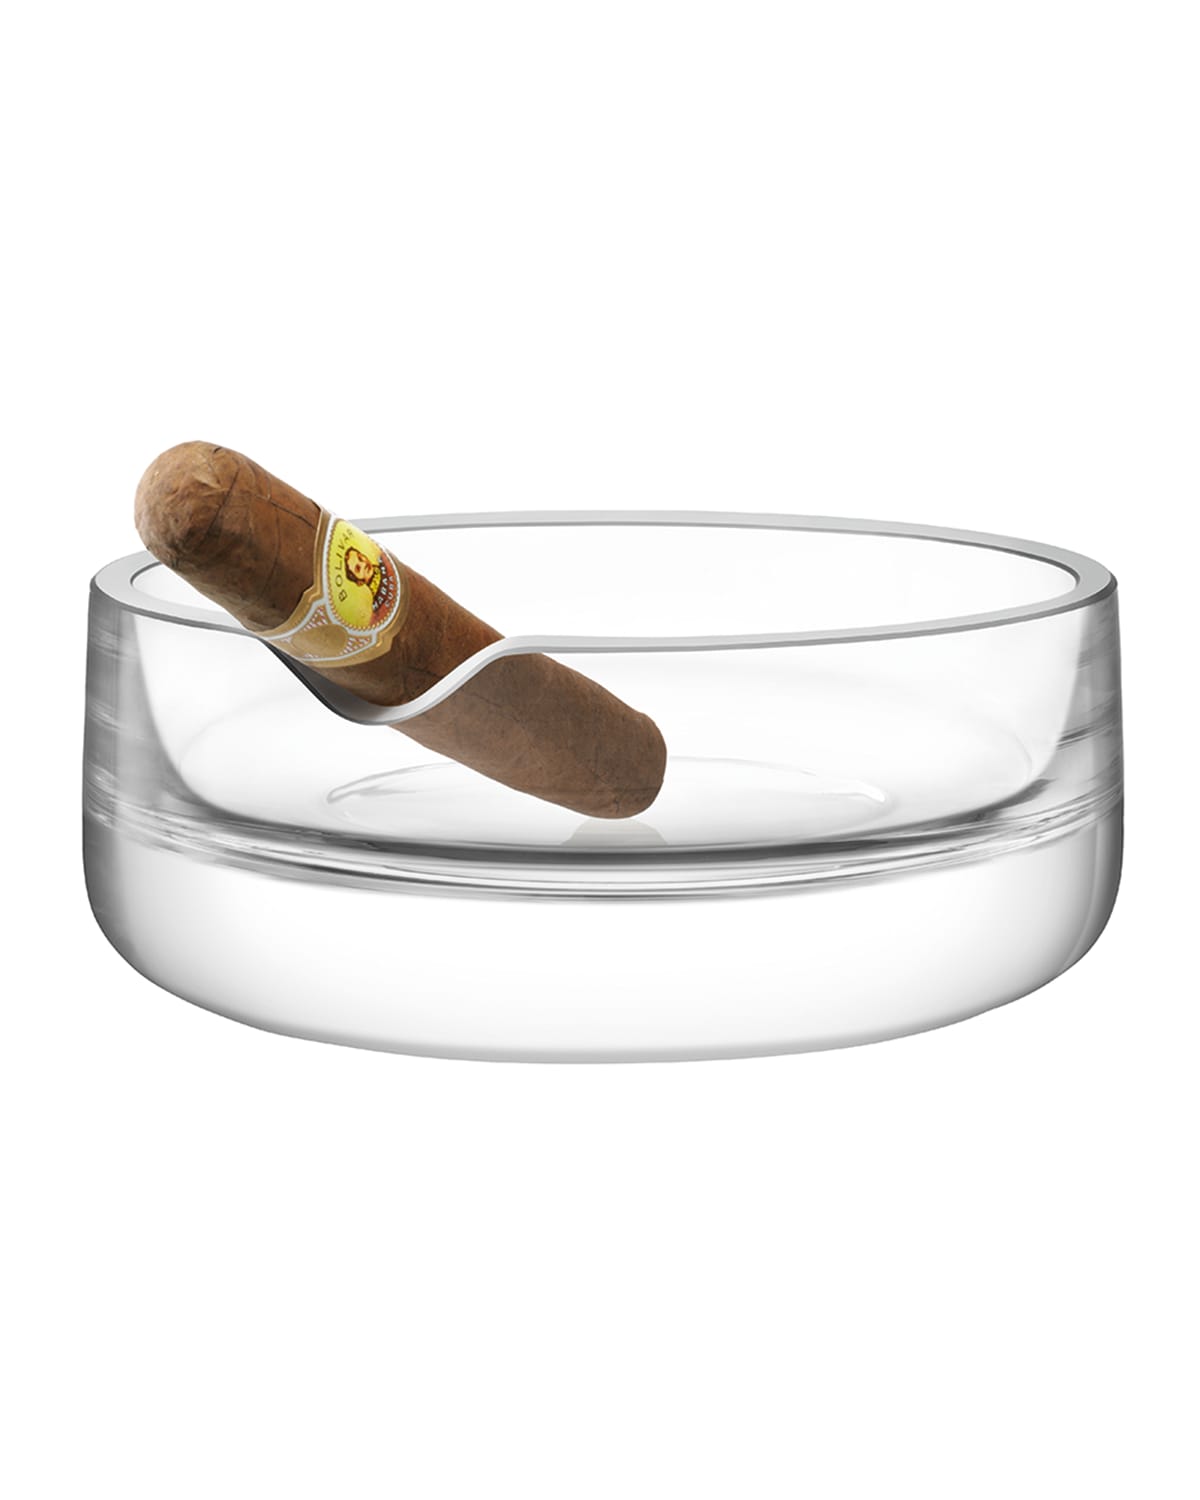 Shop Lsa Bar Culture Cigar Ashtray In Clear